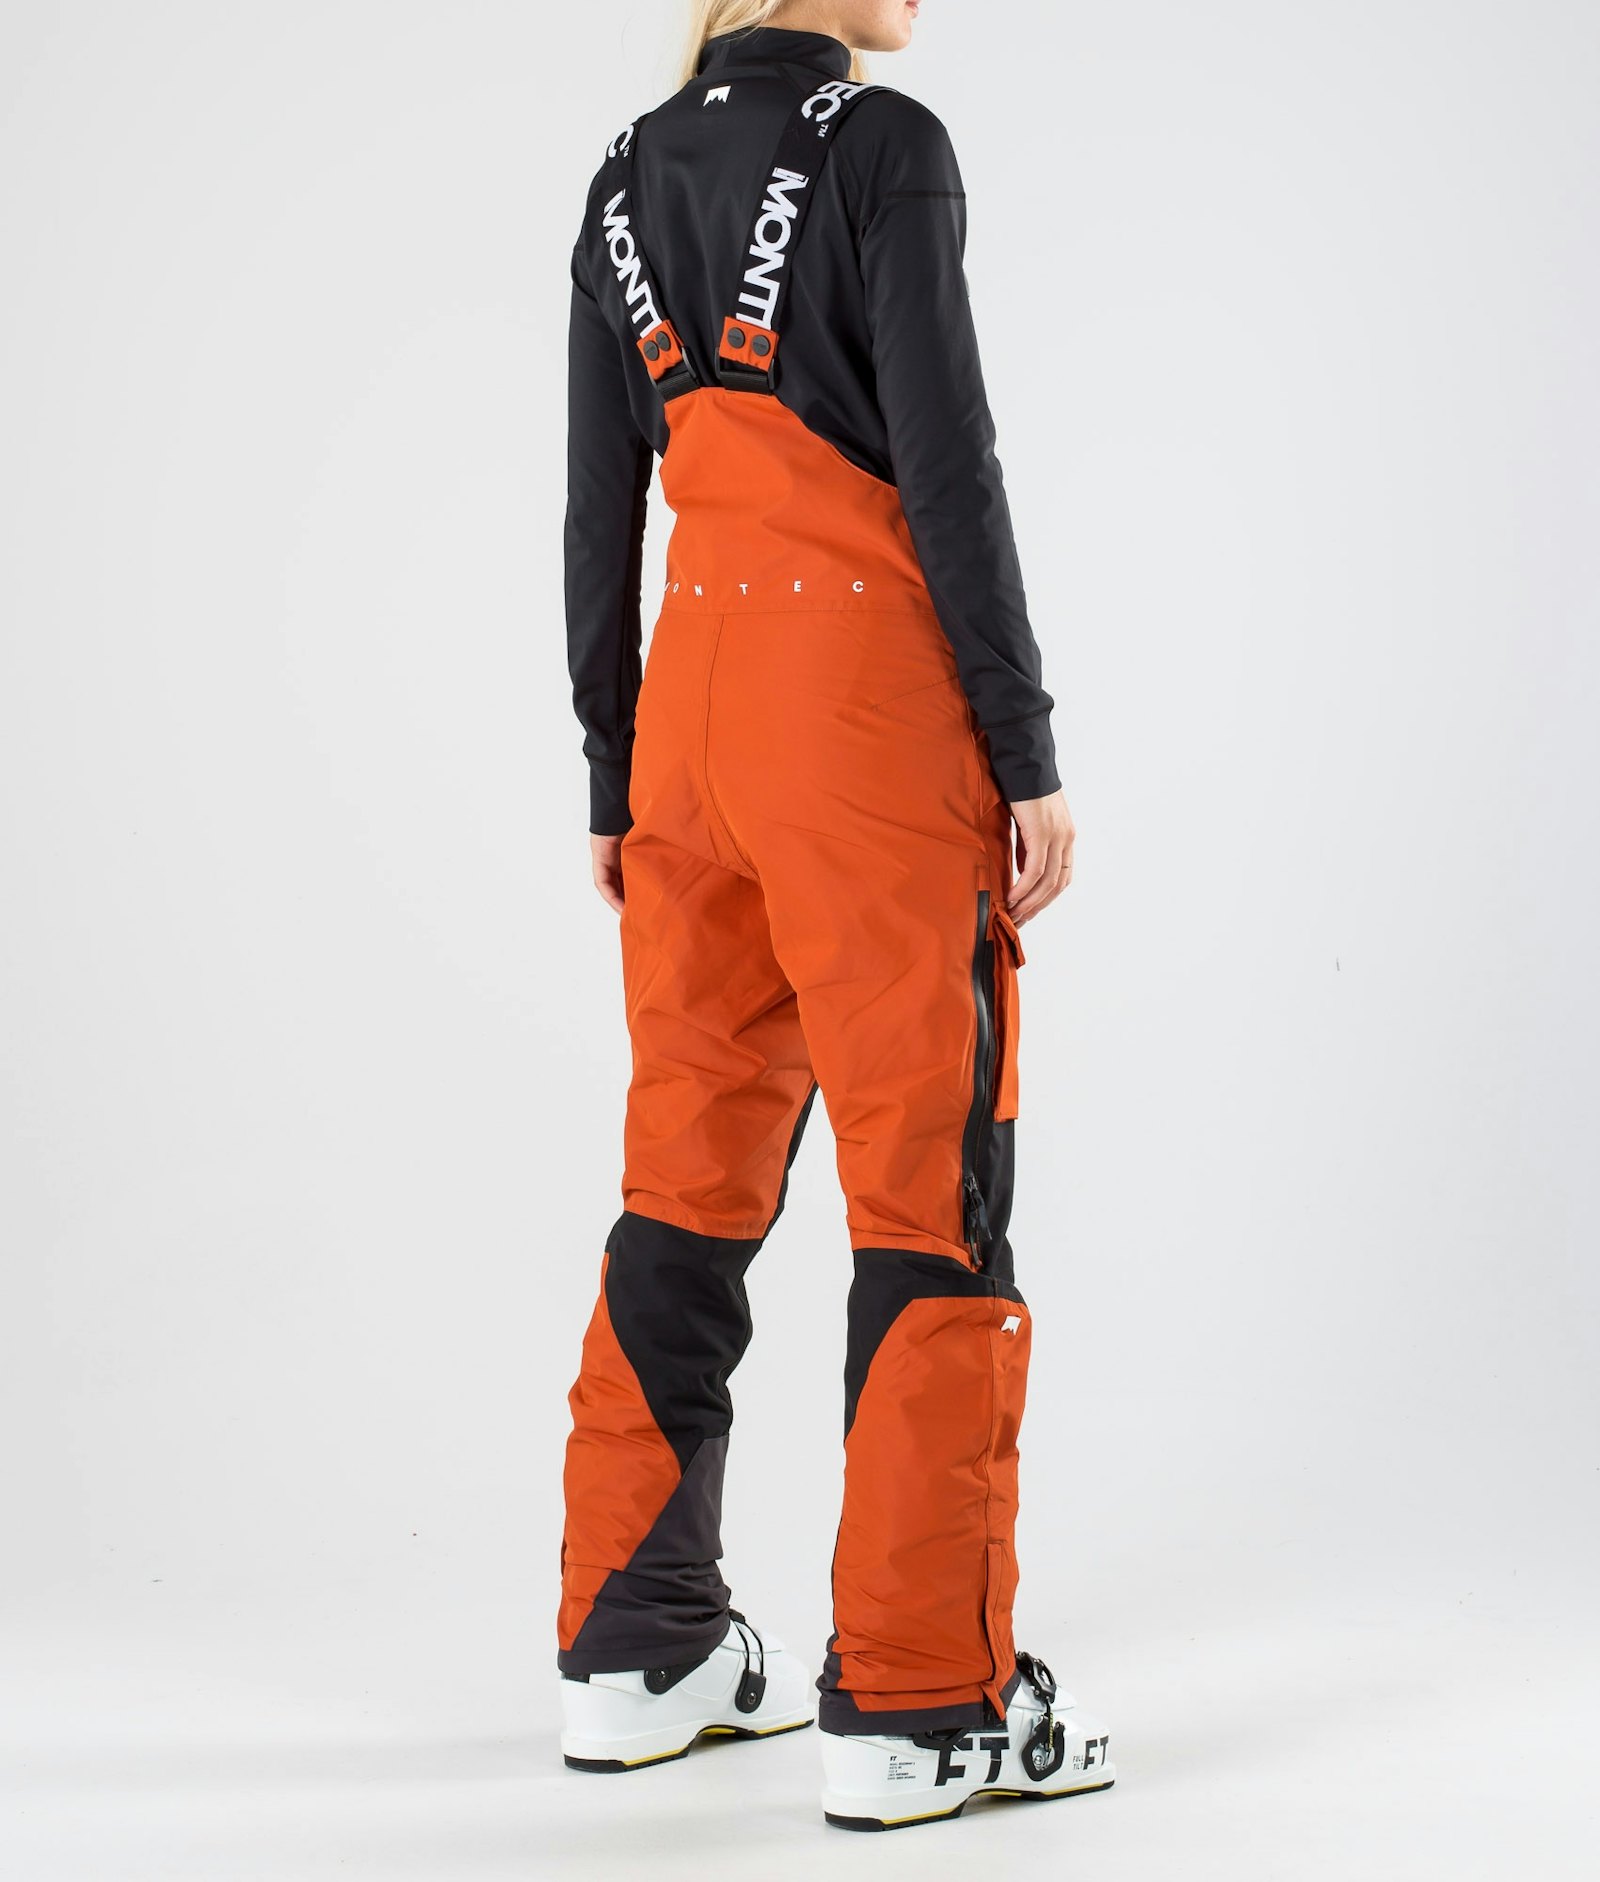 Montec Fawk W 2019 Pantalones Esquí Mujer Clay/Black